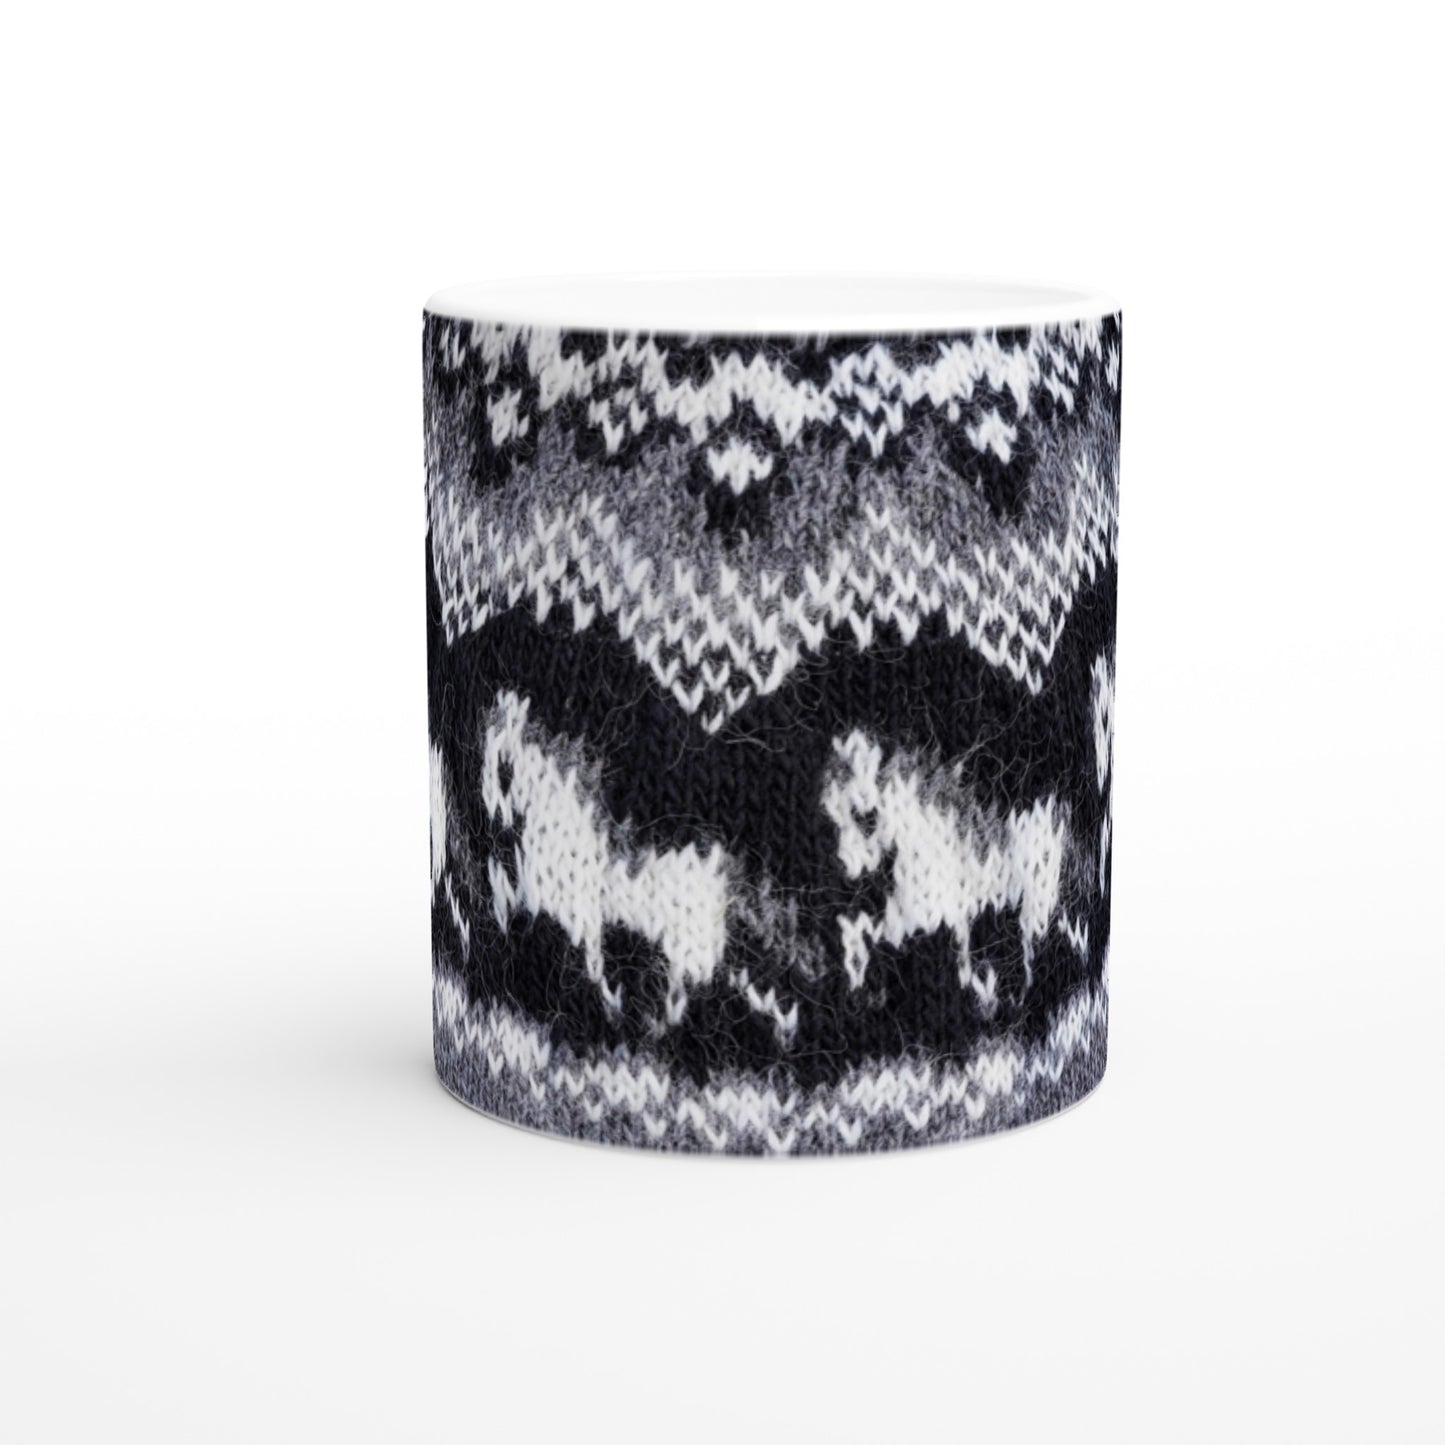 Mug with Icelandic knit pattern - Tölt (grey)